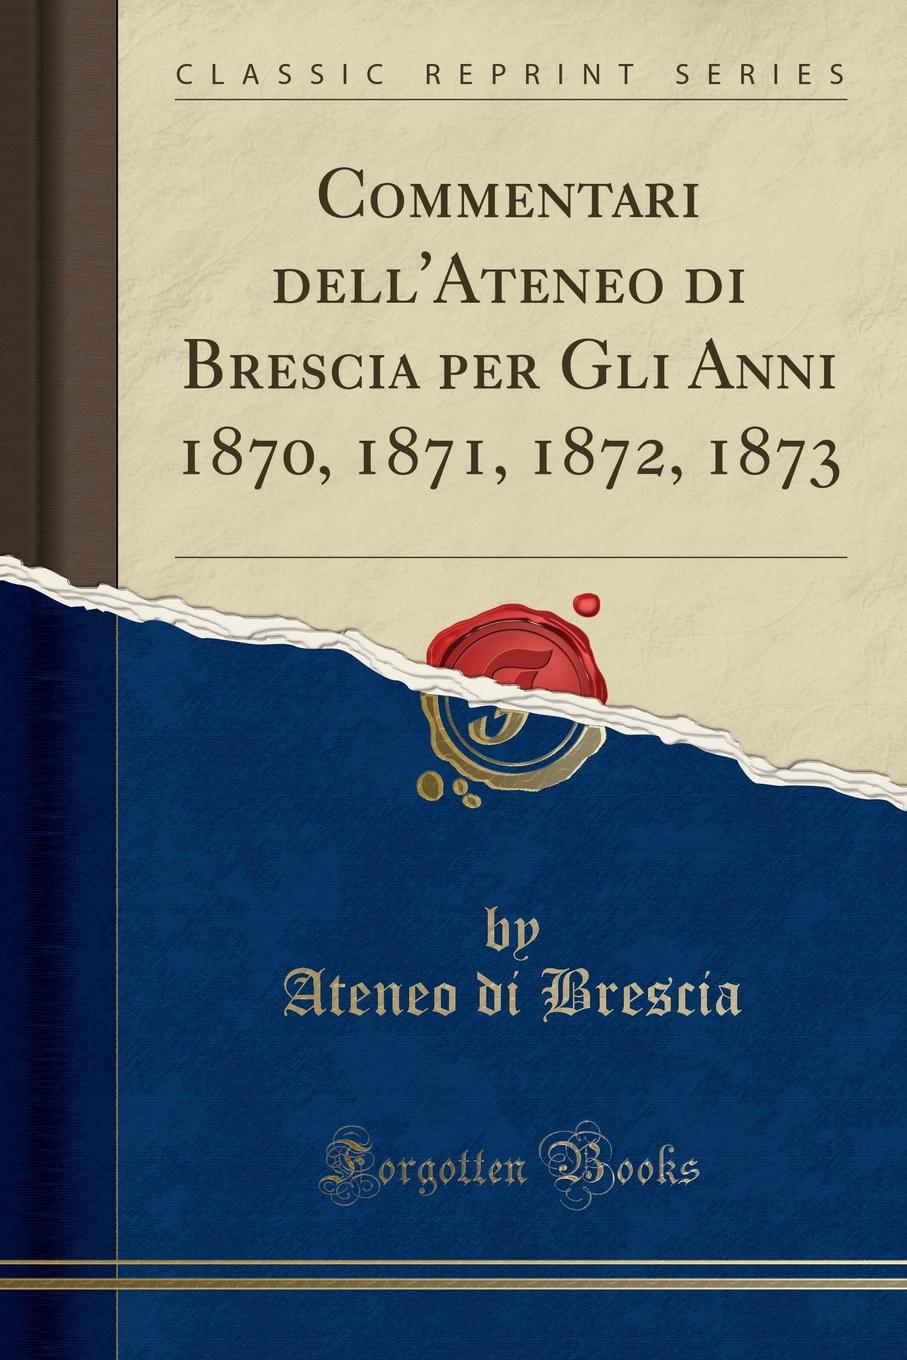 Ateneo di Brescia Commentari dell.Ateneo di Brescia per Gli Anni 1870, 1871, 1872, 1873 (Classic Reprint)